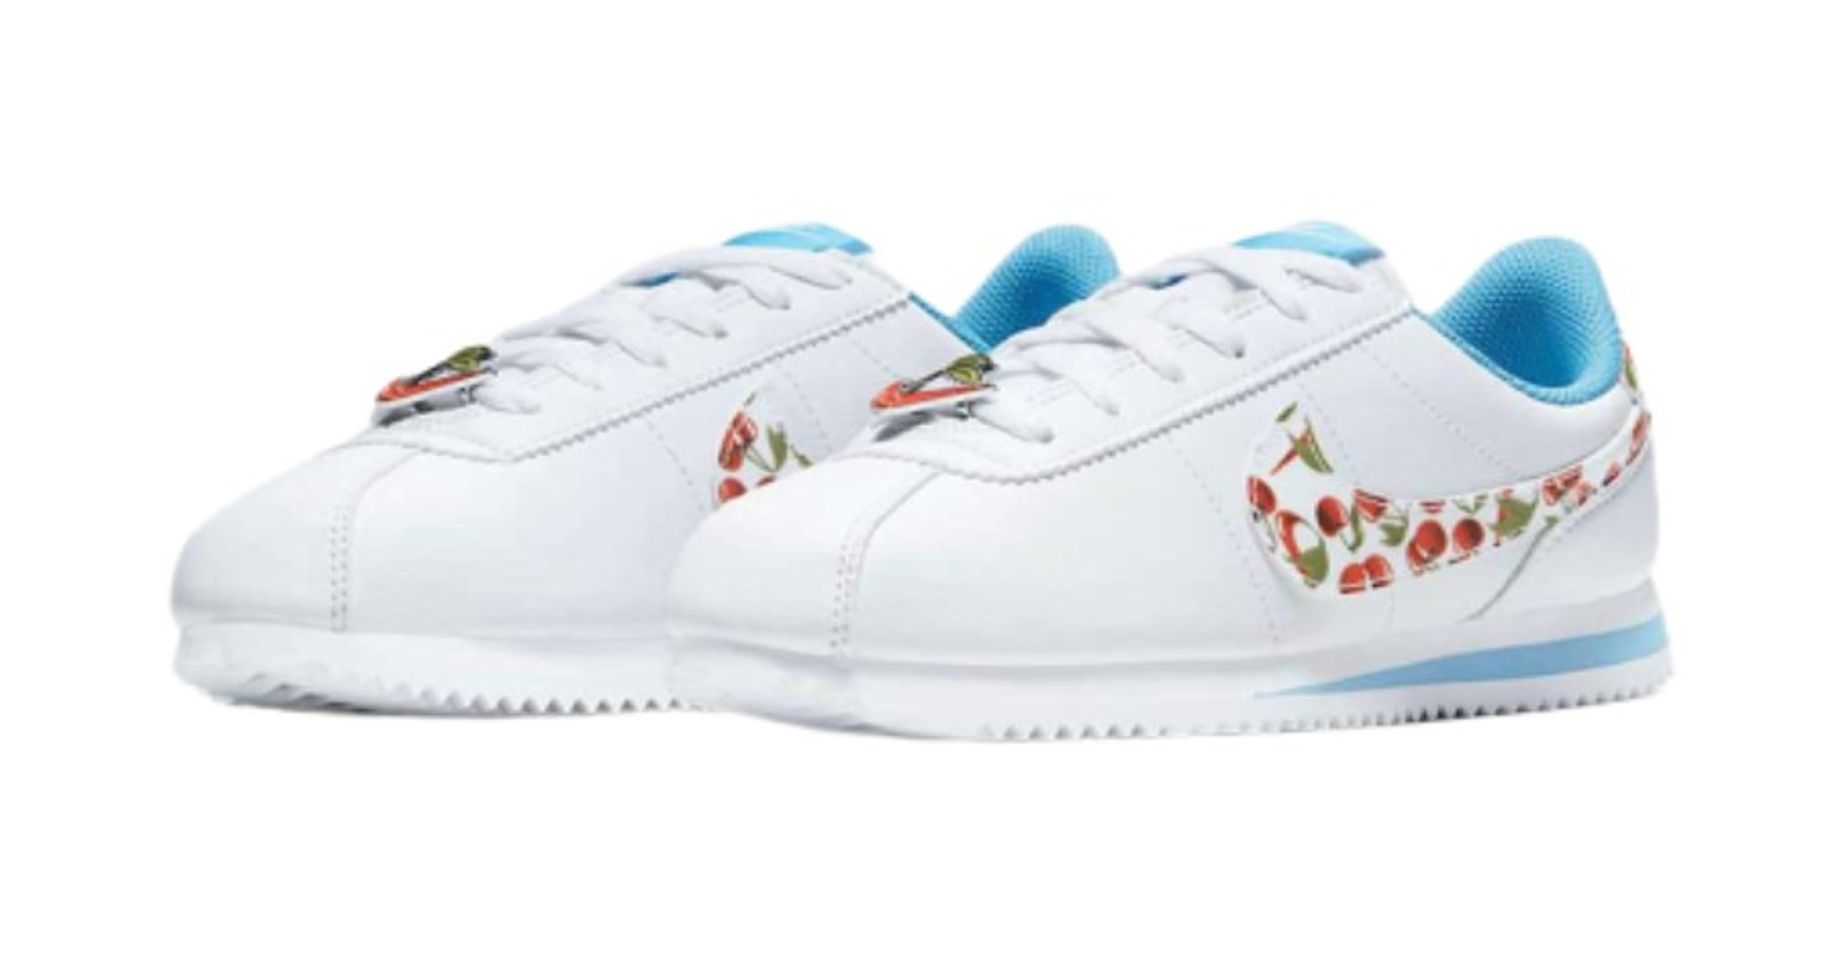 Giày thể thao Nike Cortez Cherry màu trắng